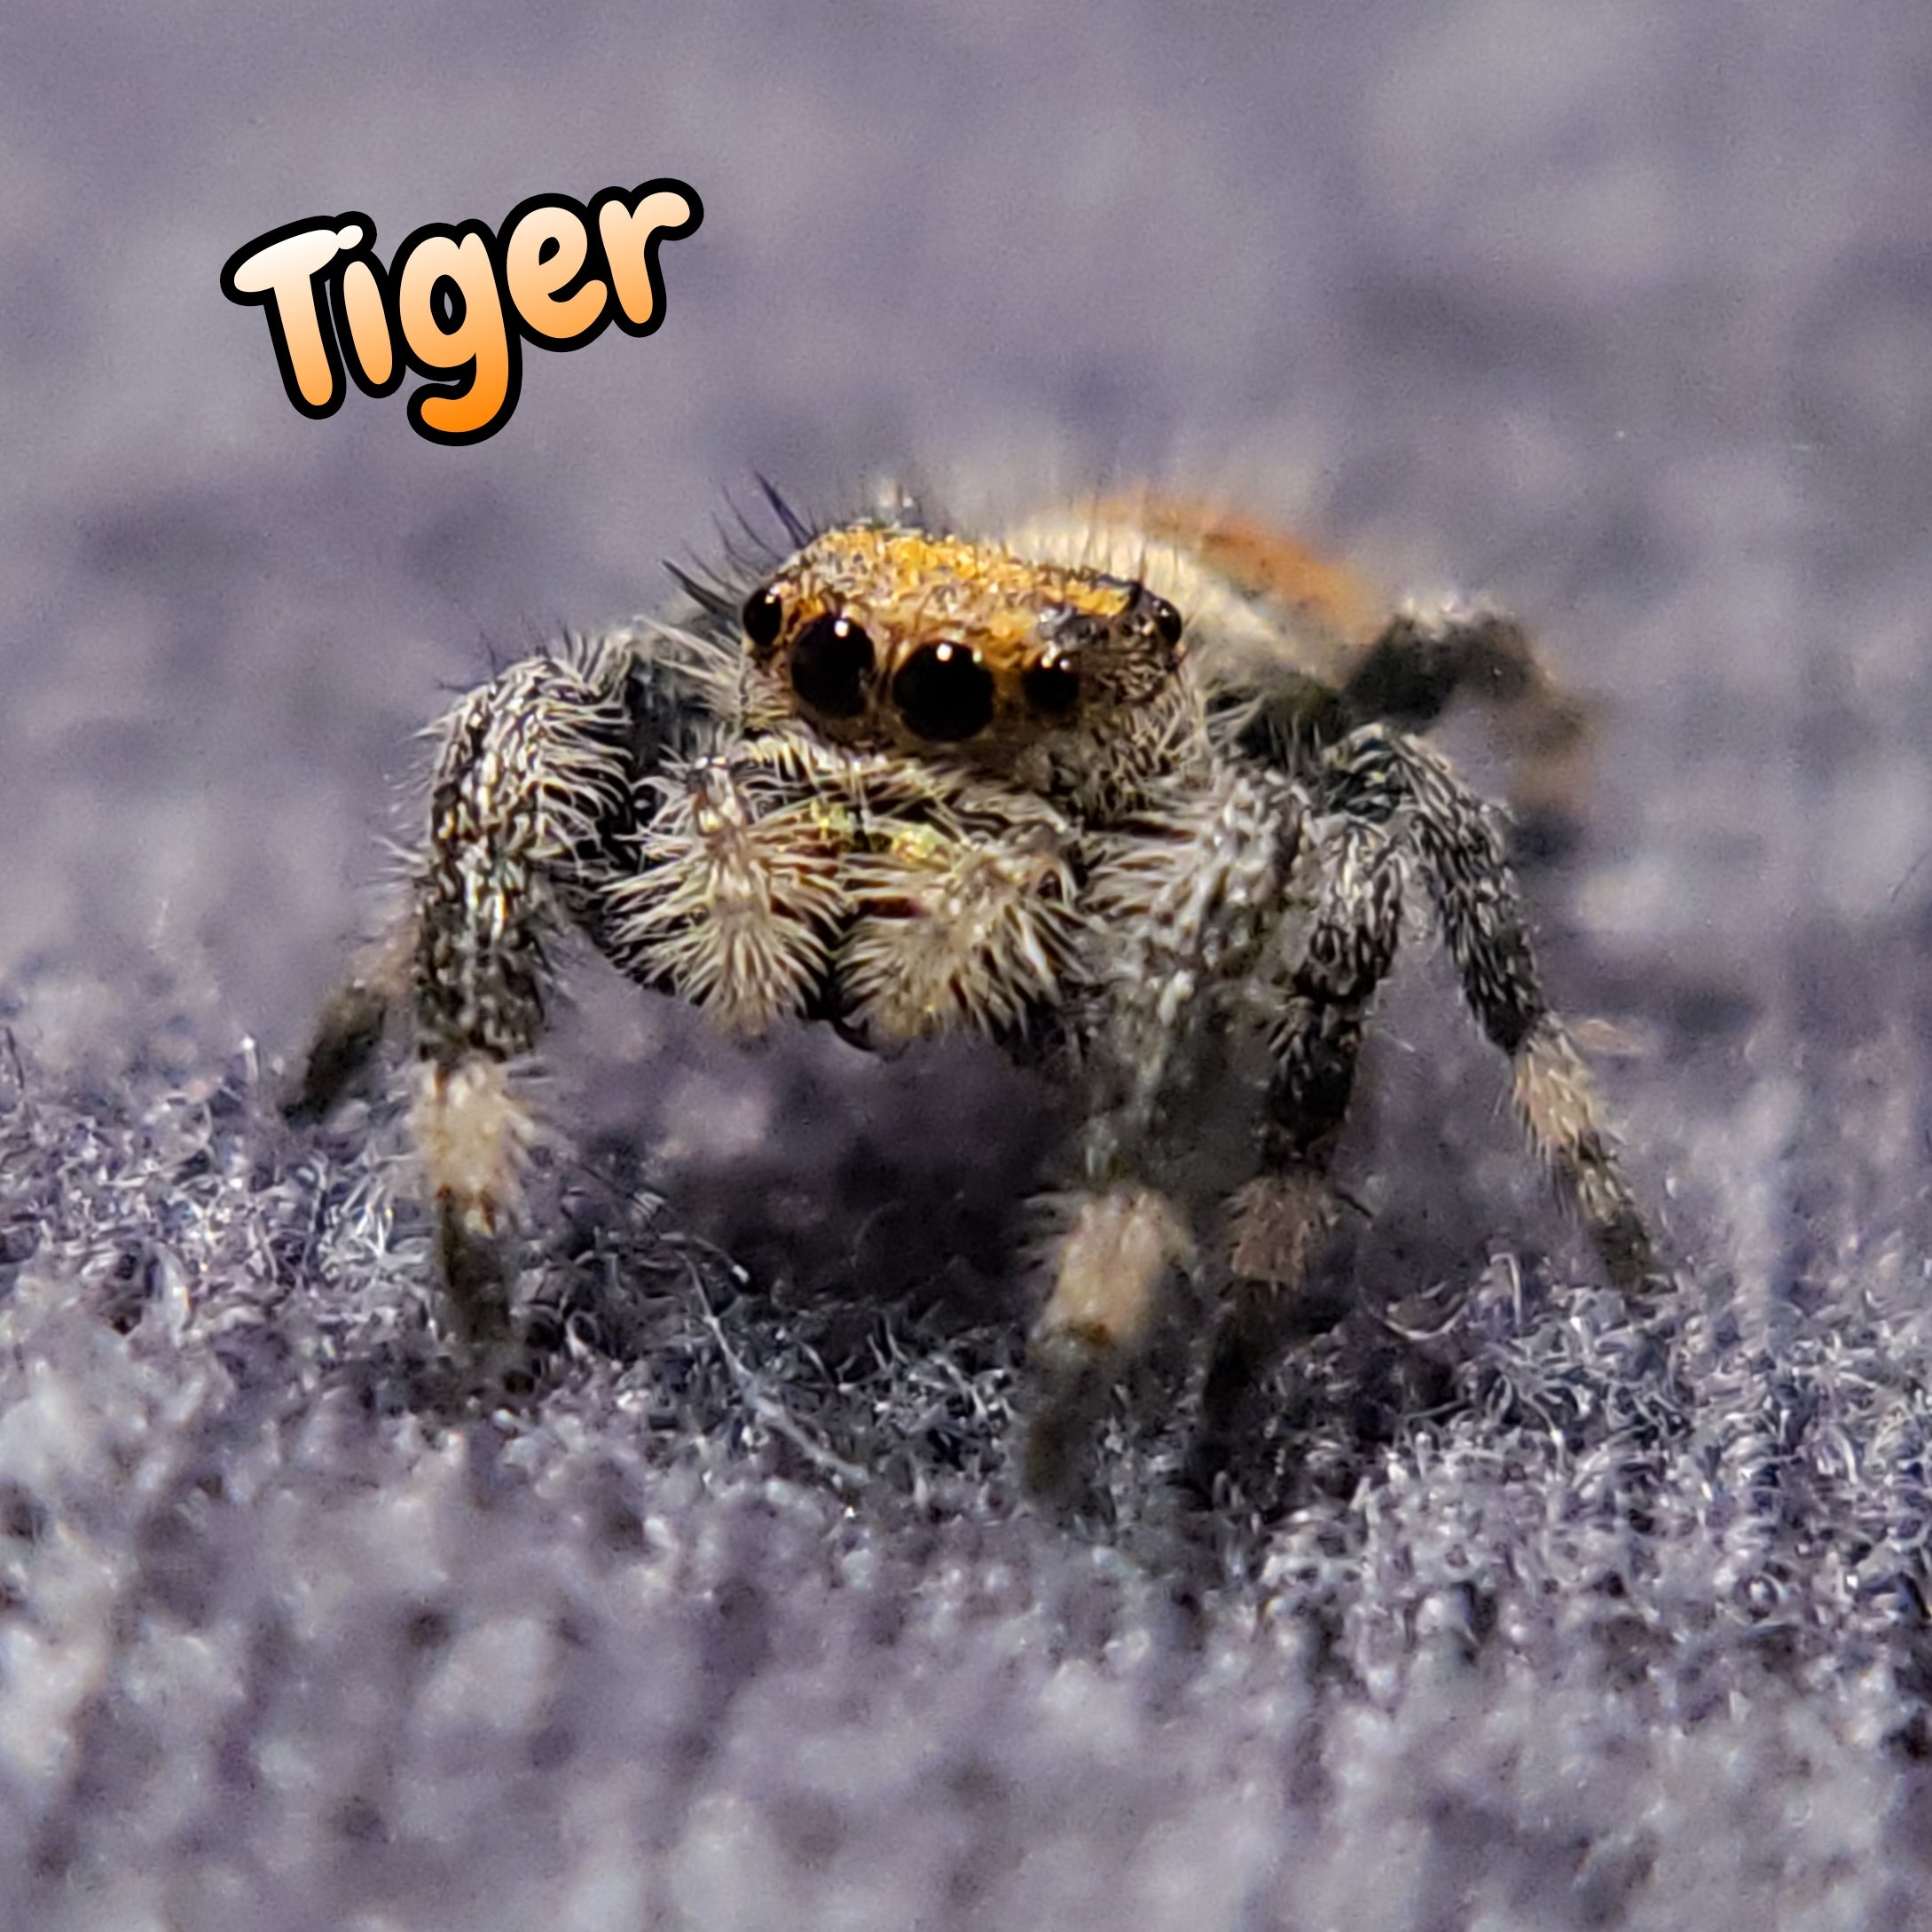 Regal Jumping Spider "Tiger"